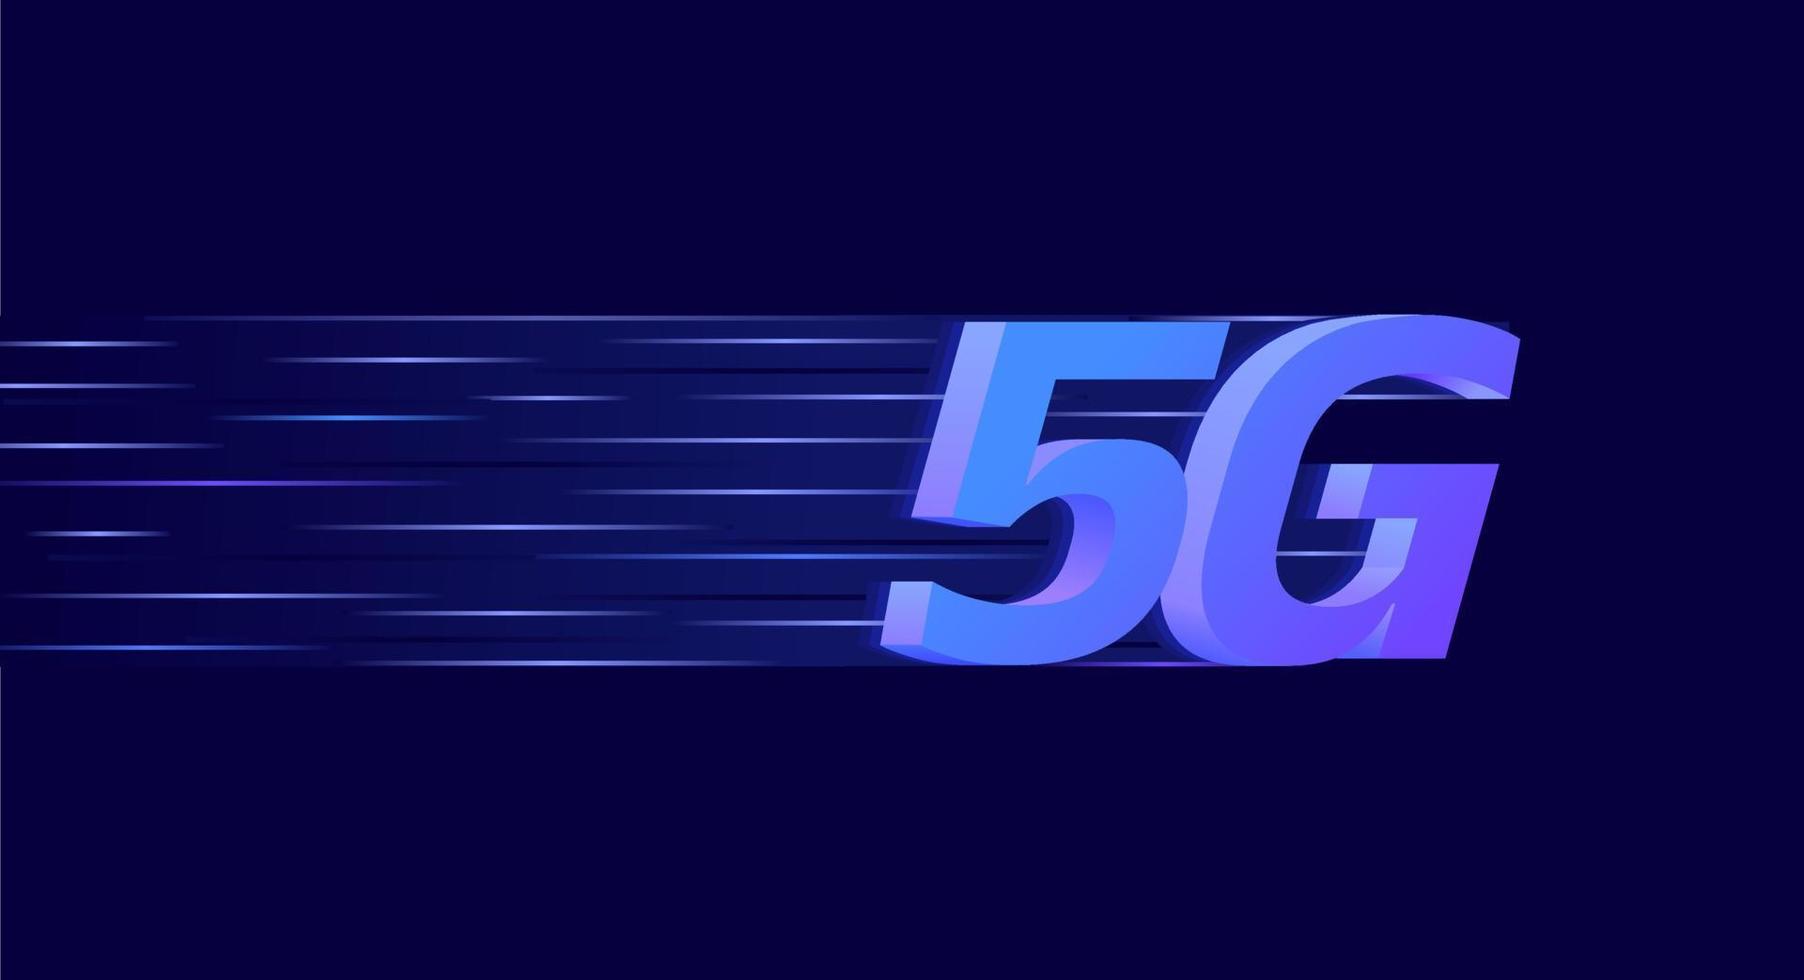 5g-Technologie Internet-Hintergrundbild schnelle Netzwerkgeschwindigkeit abstrakte futuristische Vektorillustration vektor